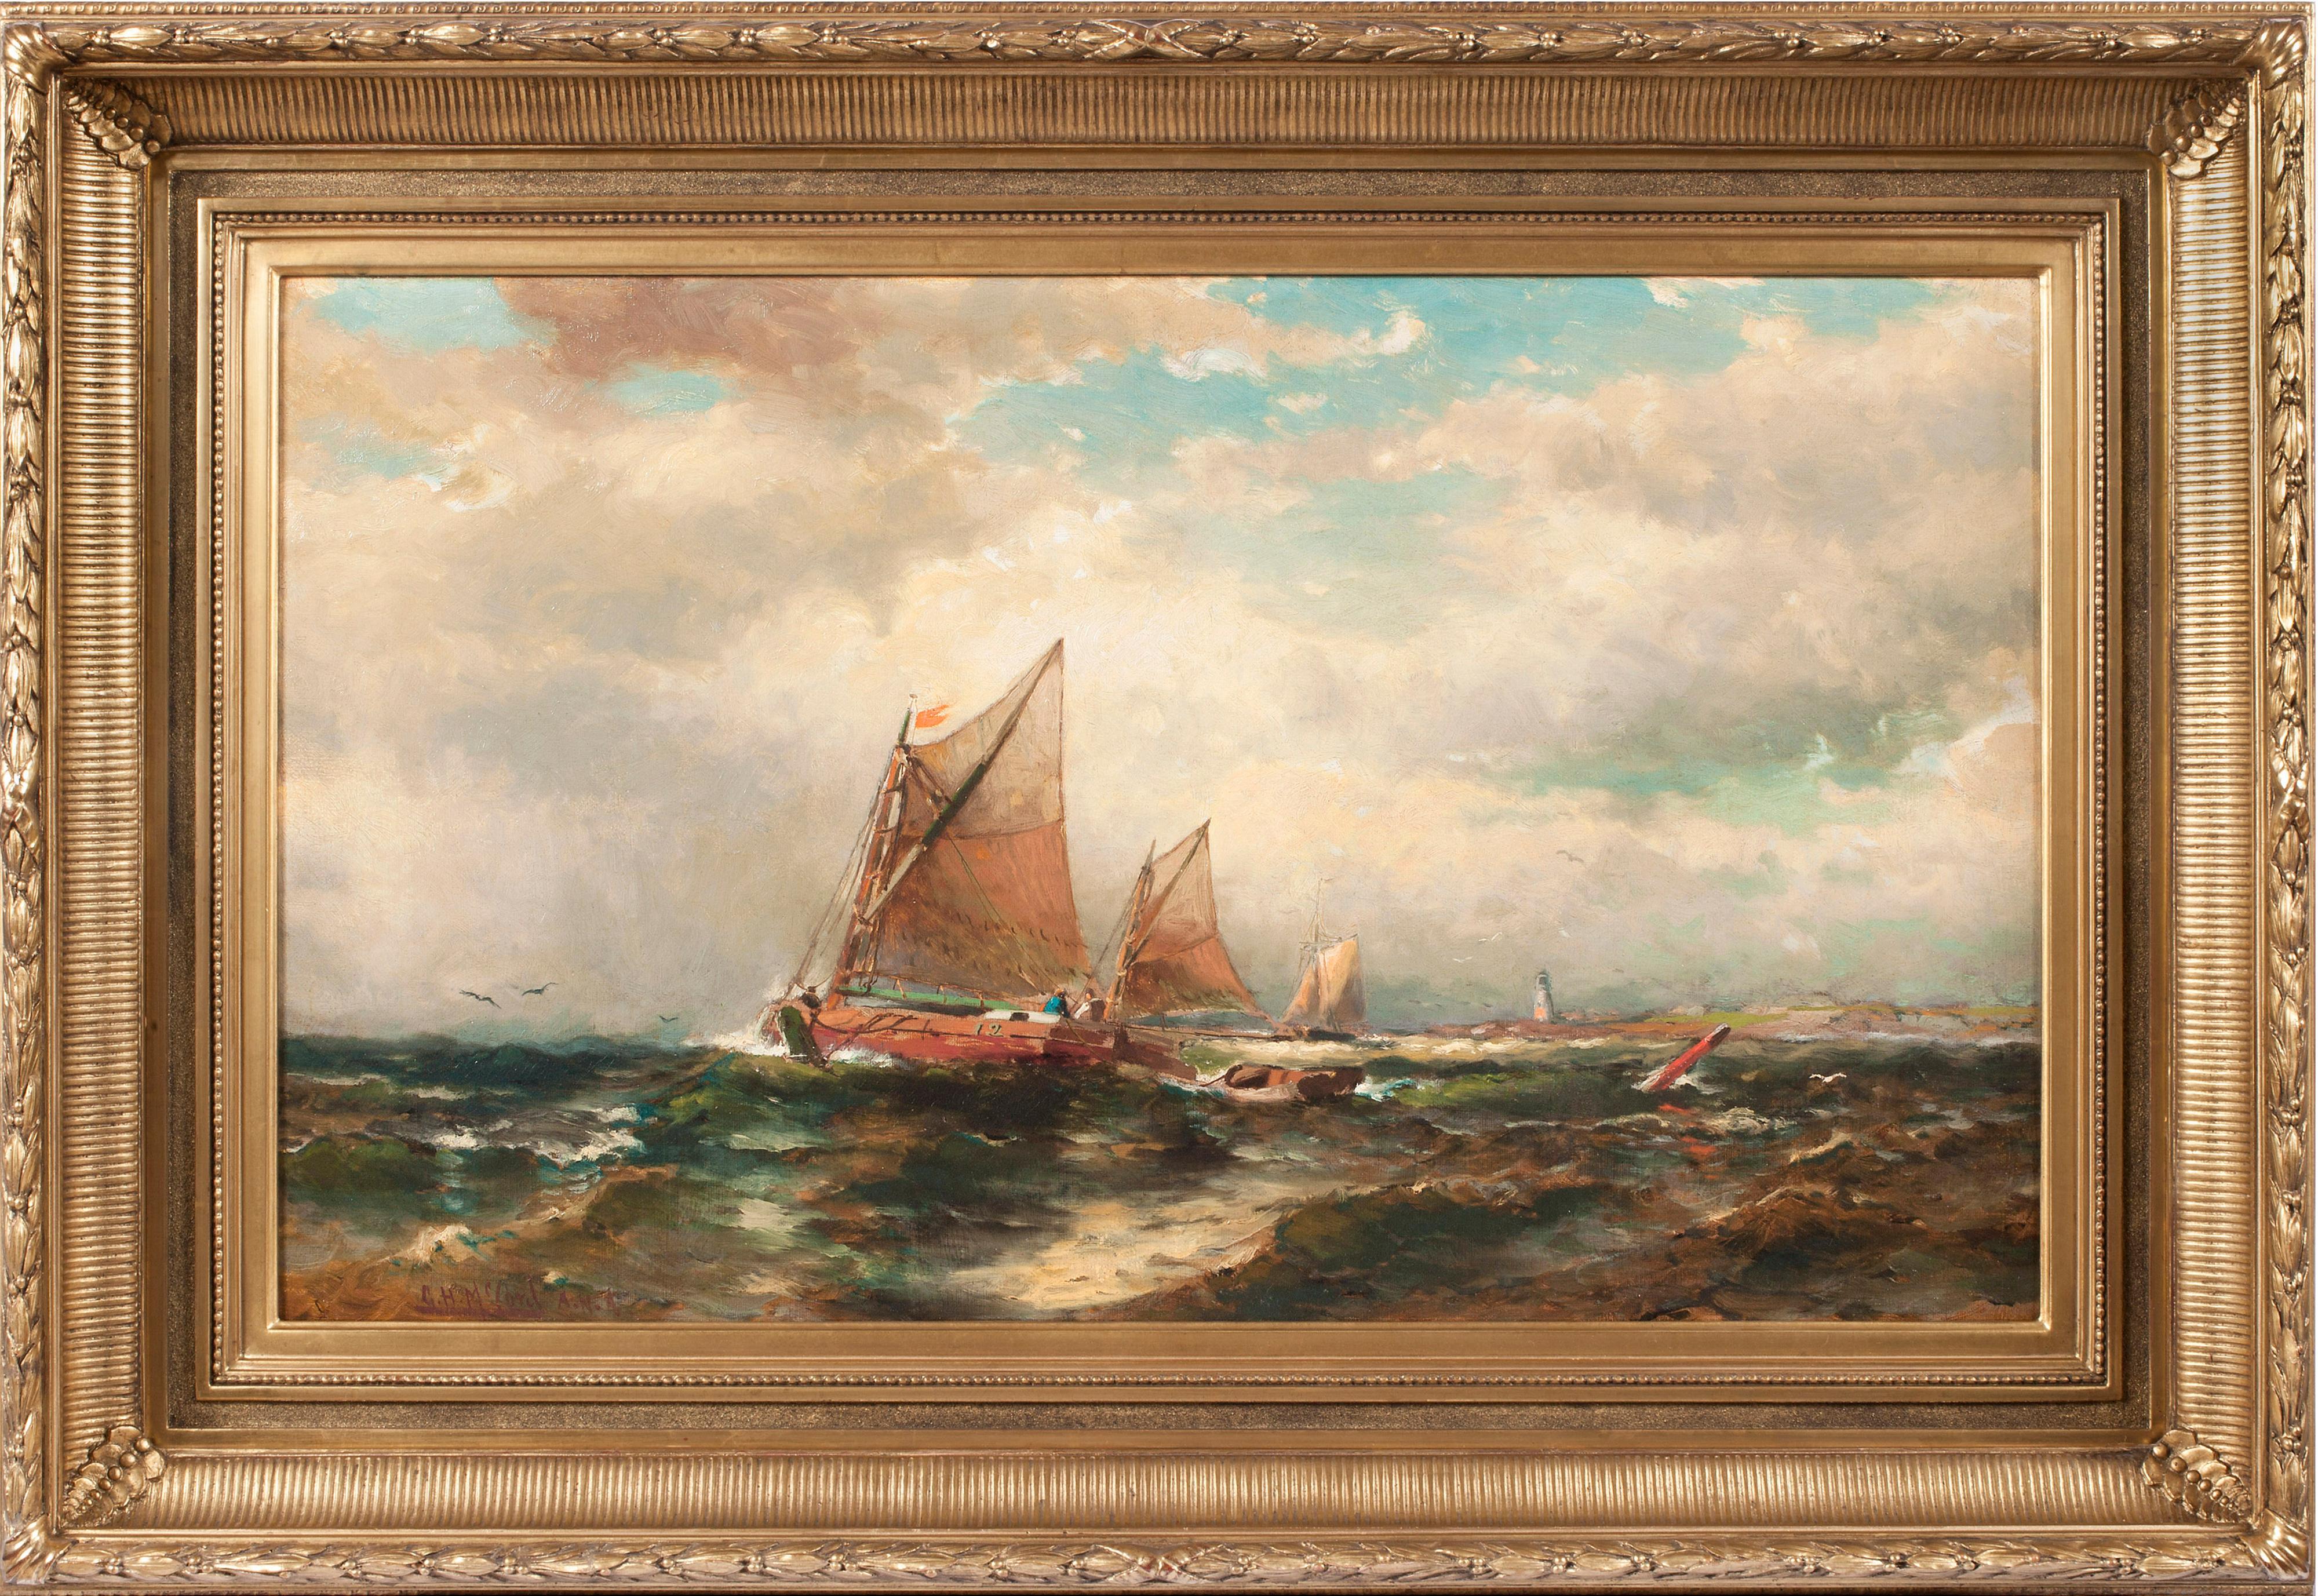 "Seascape" von George Herbert McCord (1848-1909), einem Künstler der Hudson River School, ist in Öl auf Leinwand gemalt und misst 18,07 x 30,13 cm. Das Werk, das aus einer Privatsammlung in Birmingham, Alabama, stammt, ist unten links mit "G.H.